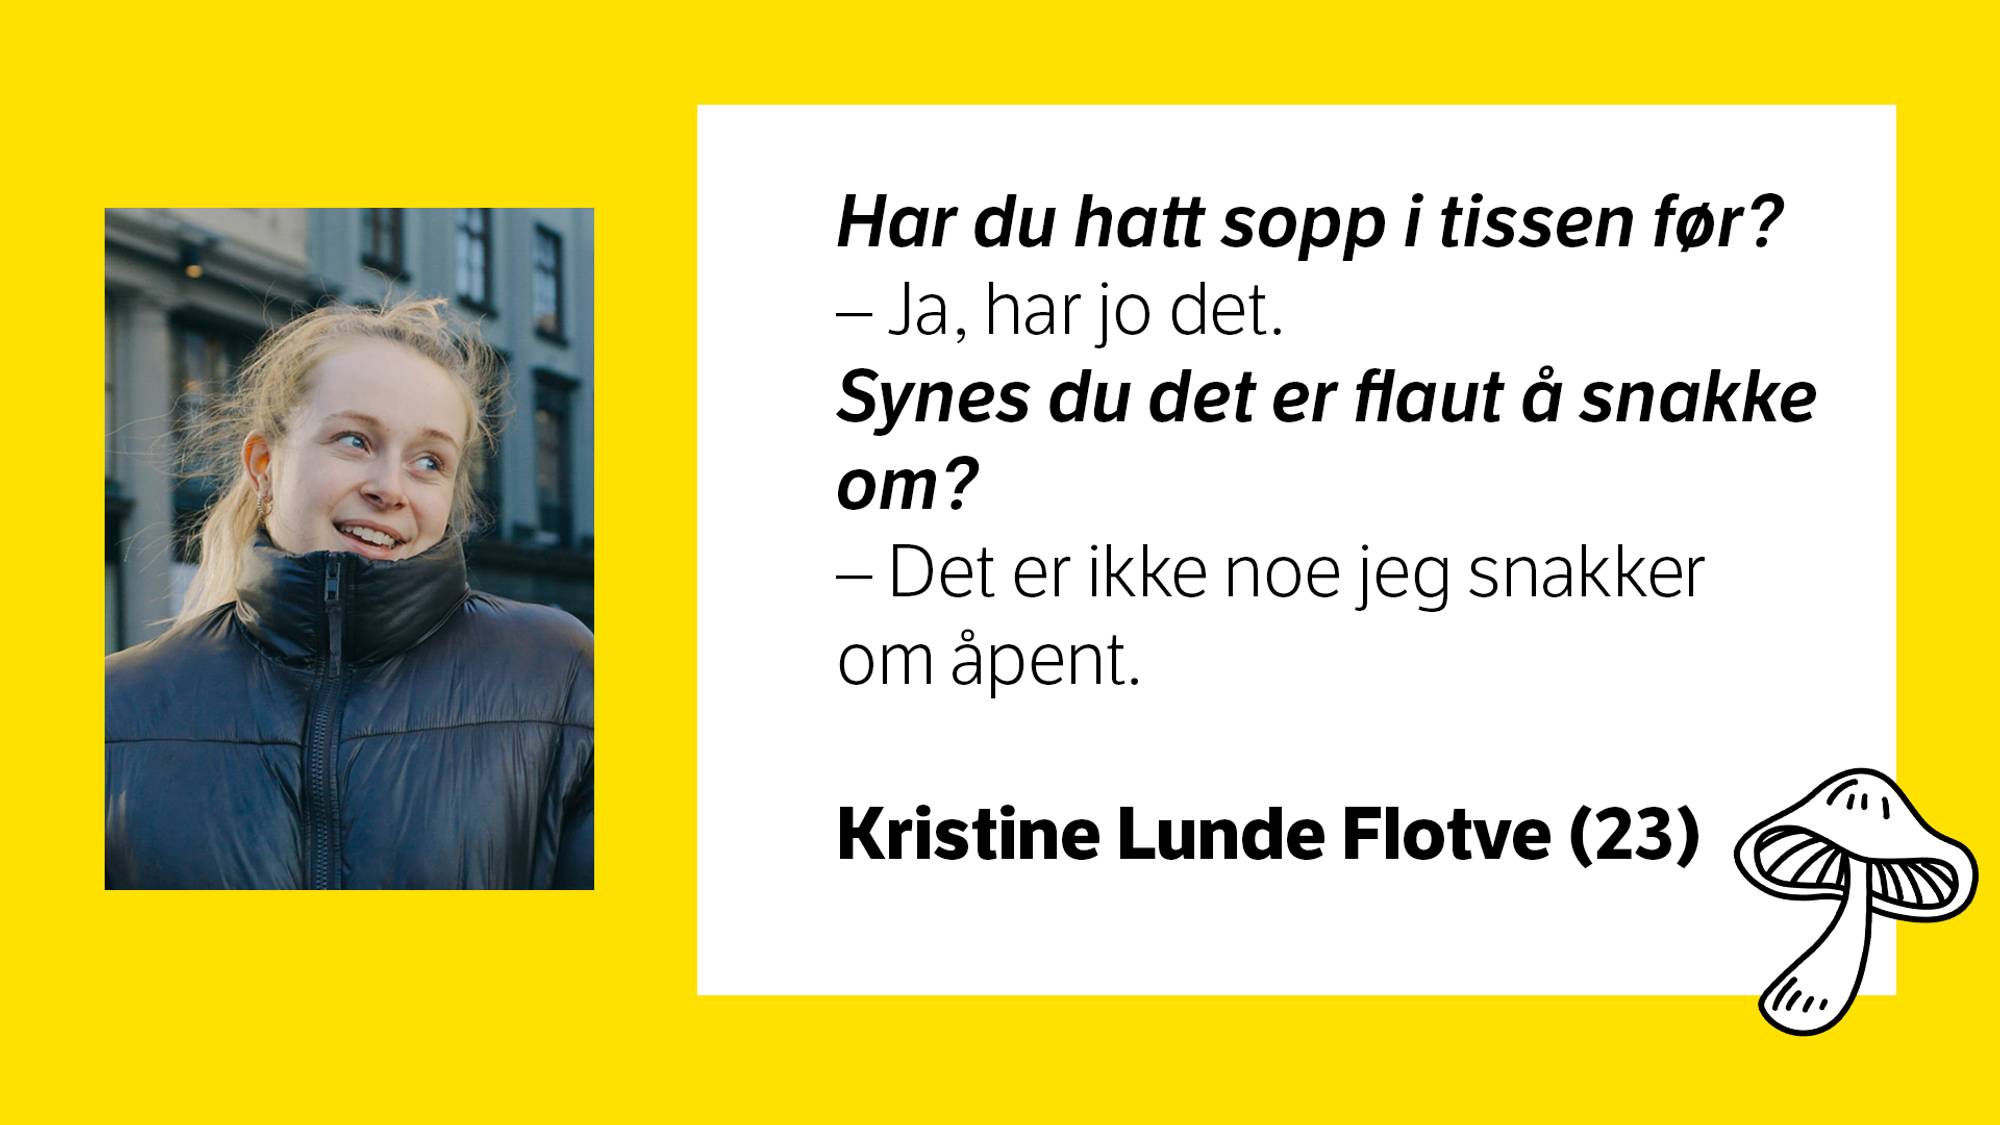 Bilde av Kristine Lunde Flotve (23) med tilhørende tekst:\nHar du hatt sopp i tissen før? \n- Ja, jeg har jo det. \nSynes du det er flaut å snakke om? \n- Det er ikke noe jeg snakker om åpent. 